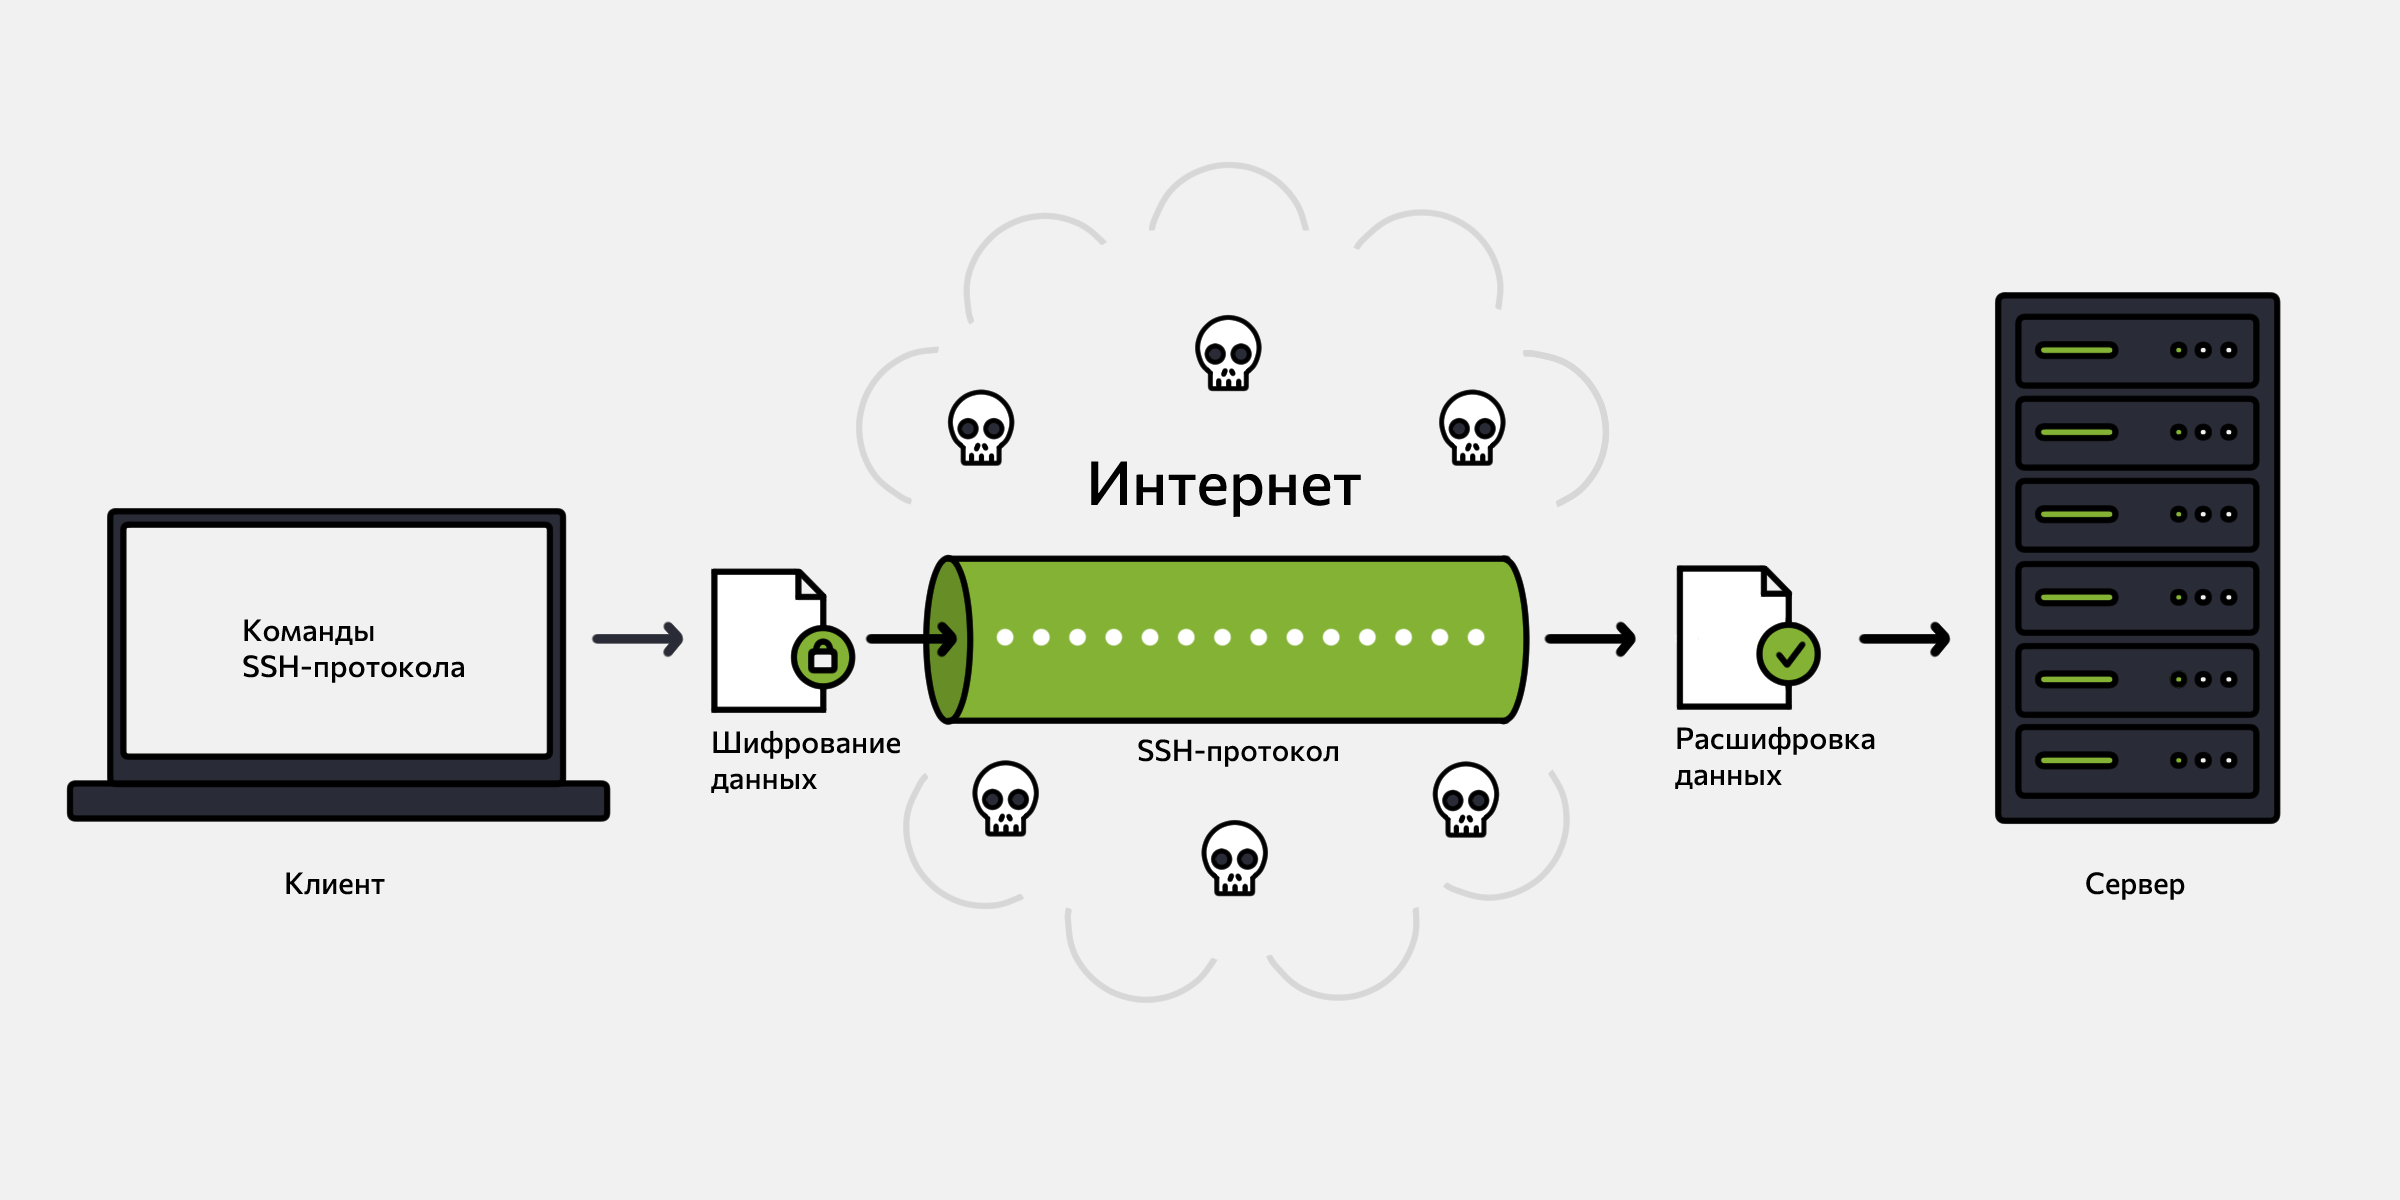 Передача данных по SSH-протоколу через небезопасную сеть